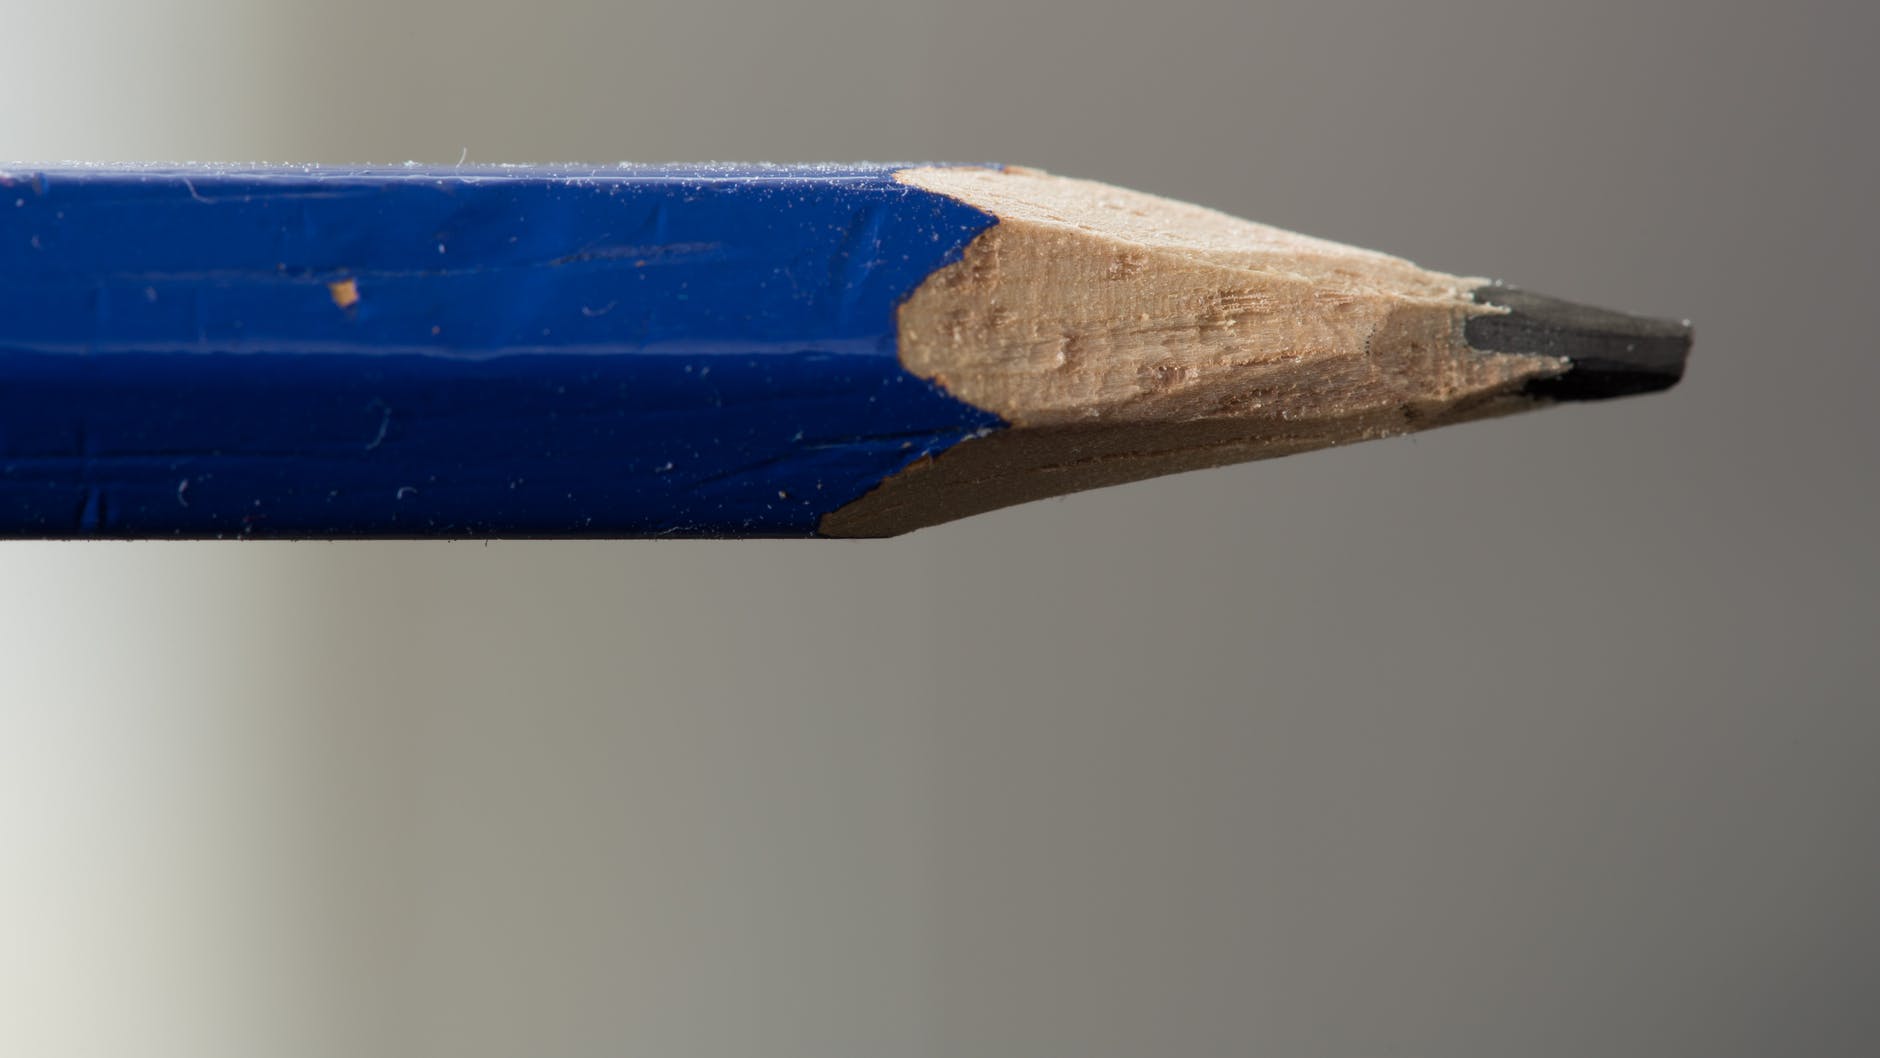 pencil lead in shallow poto